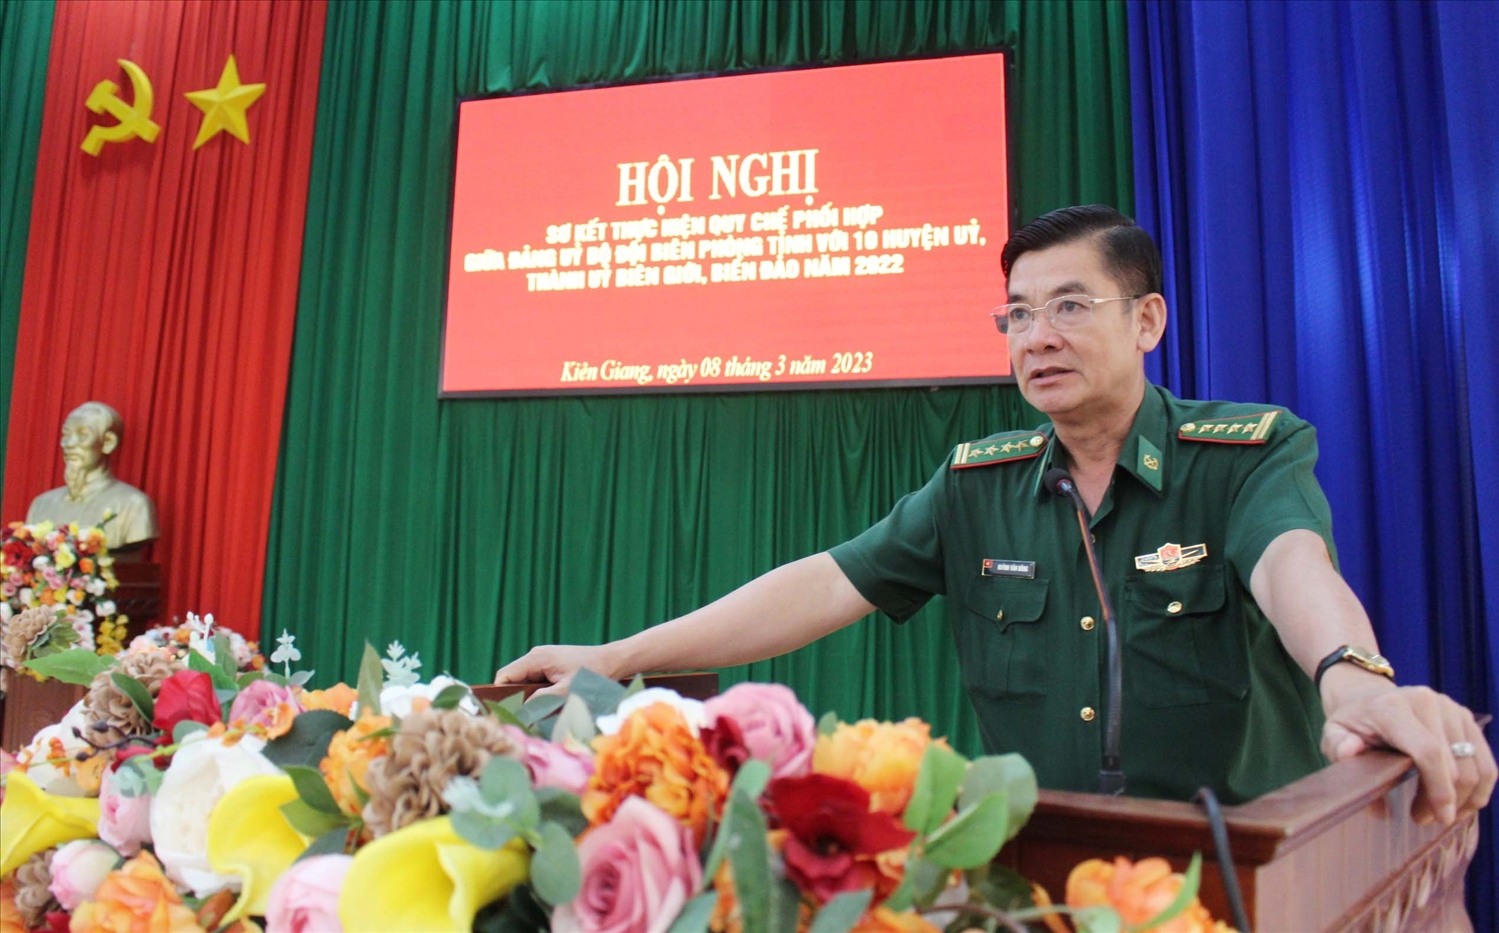 Đại tá Huỳnh Văn Đông - Bí thư Đảng ủy, Chính ủy BĐBP tỉnh Kiên Giang phát biểu gợi mở nội dung thảo luận tại Hội nghị 